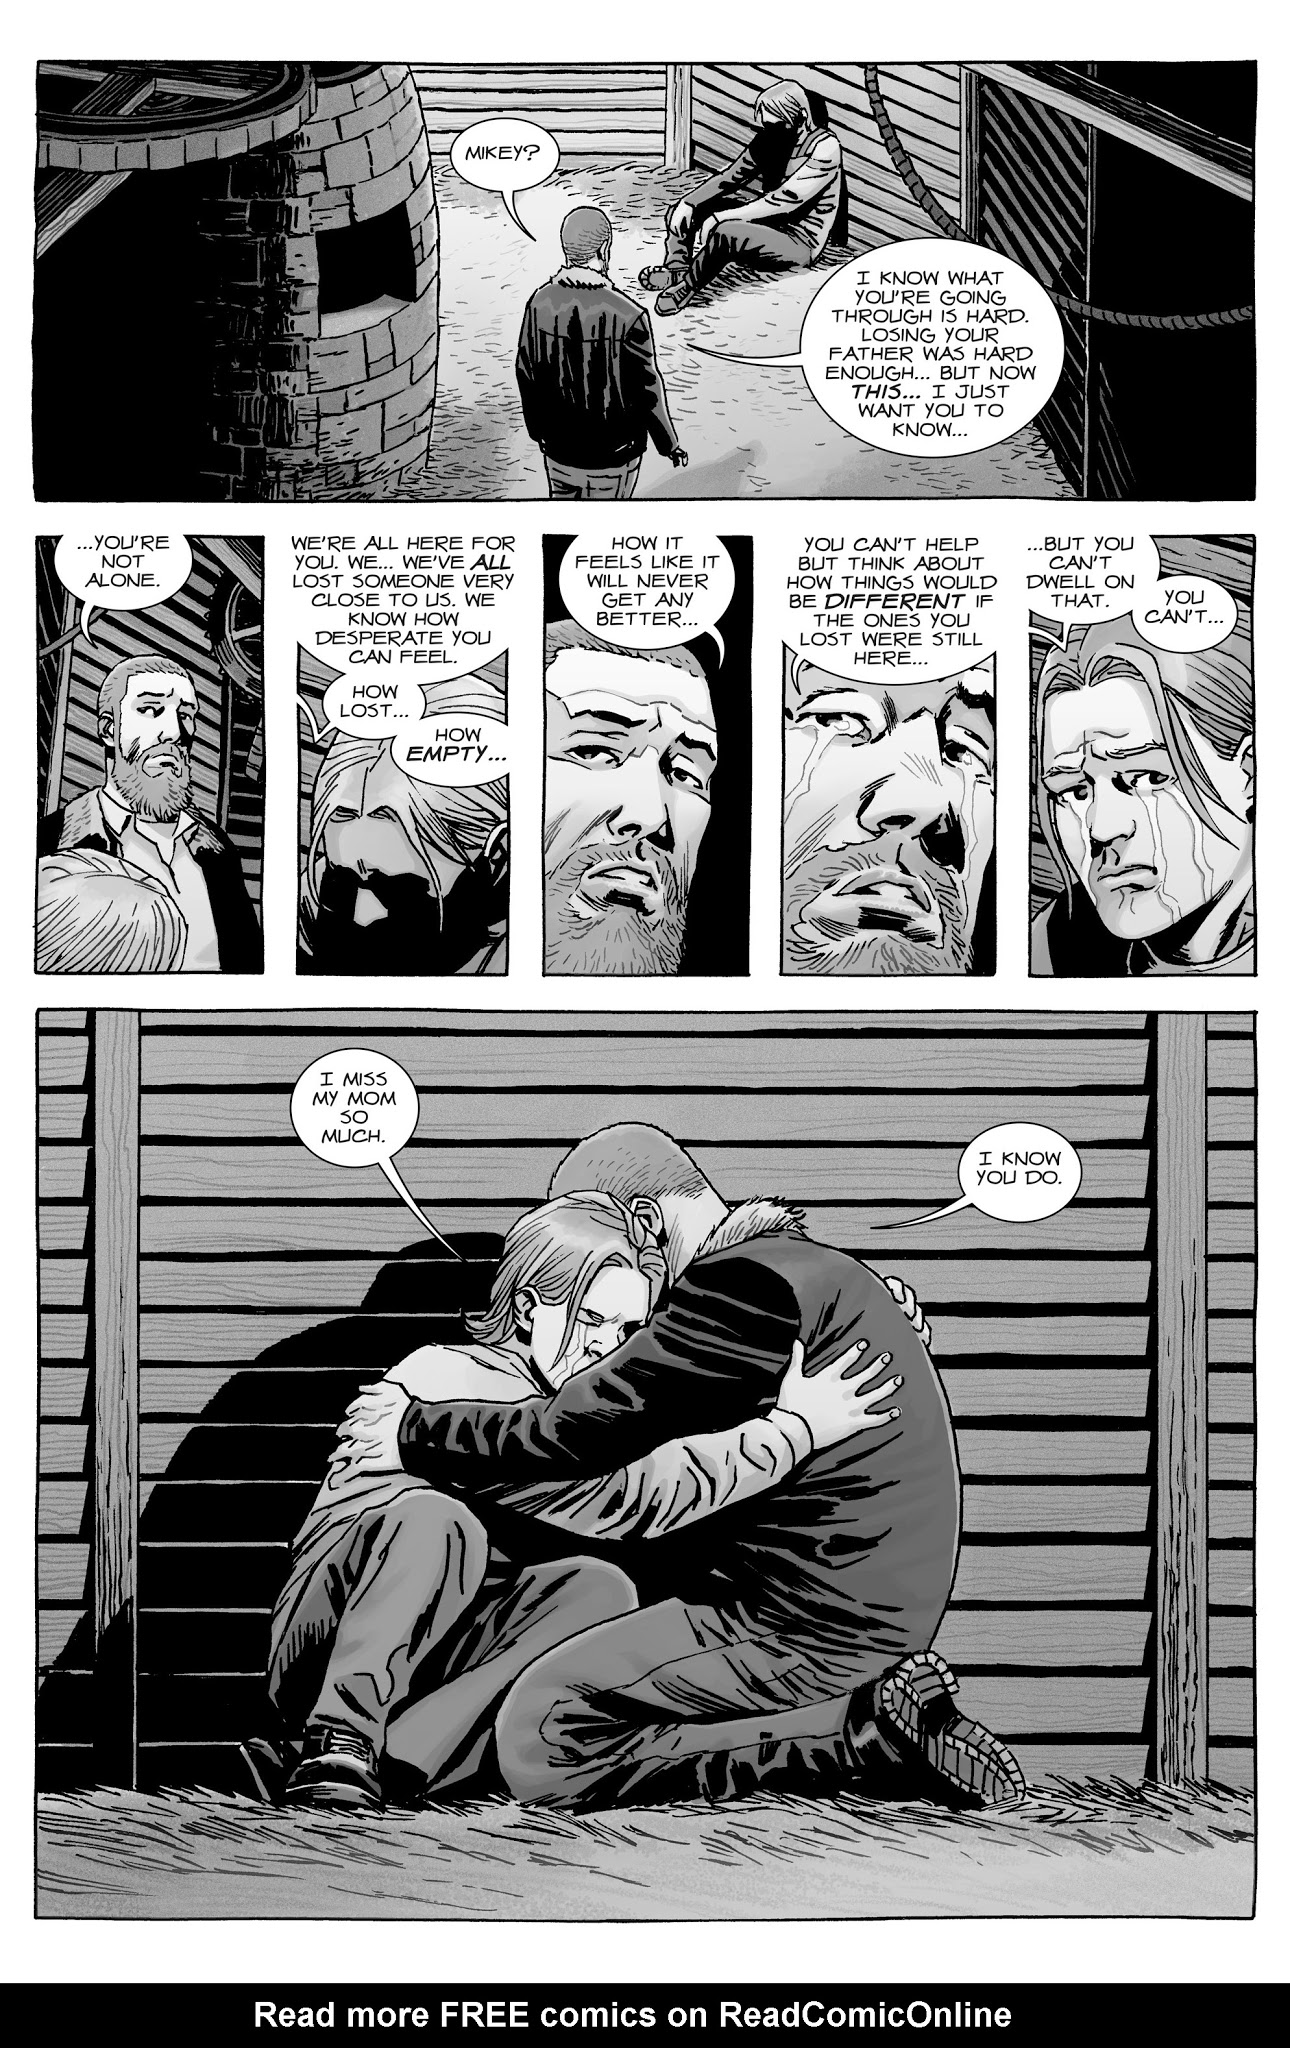 Read online The Walking Dead comic -  Issue #170 - 8